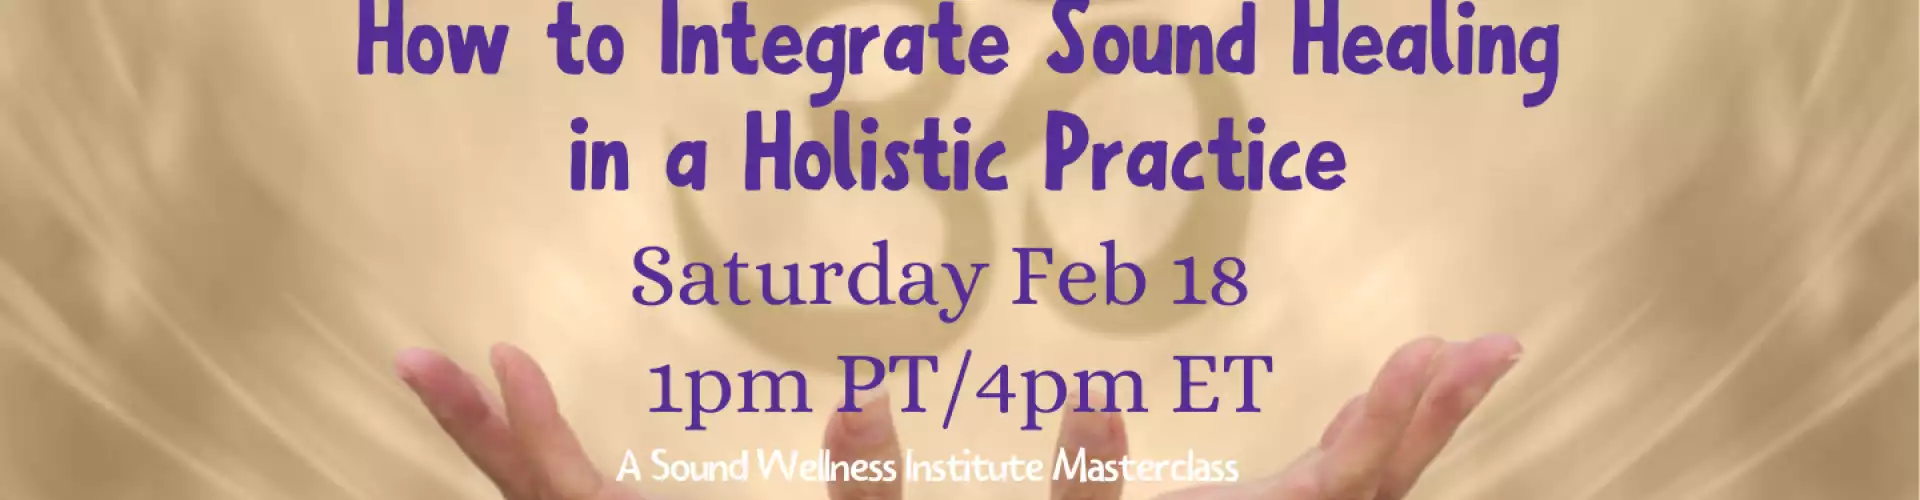 Come integrare il Sound Healing in una pratica olistica